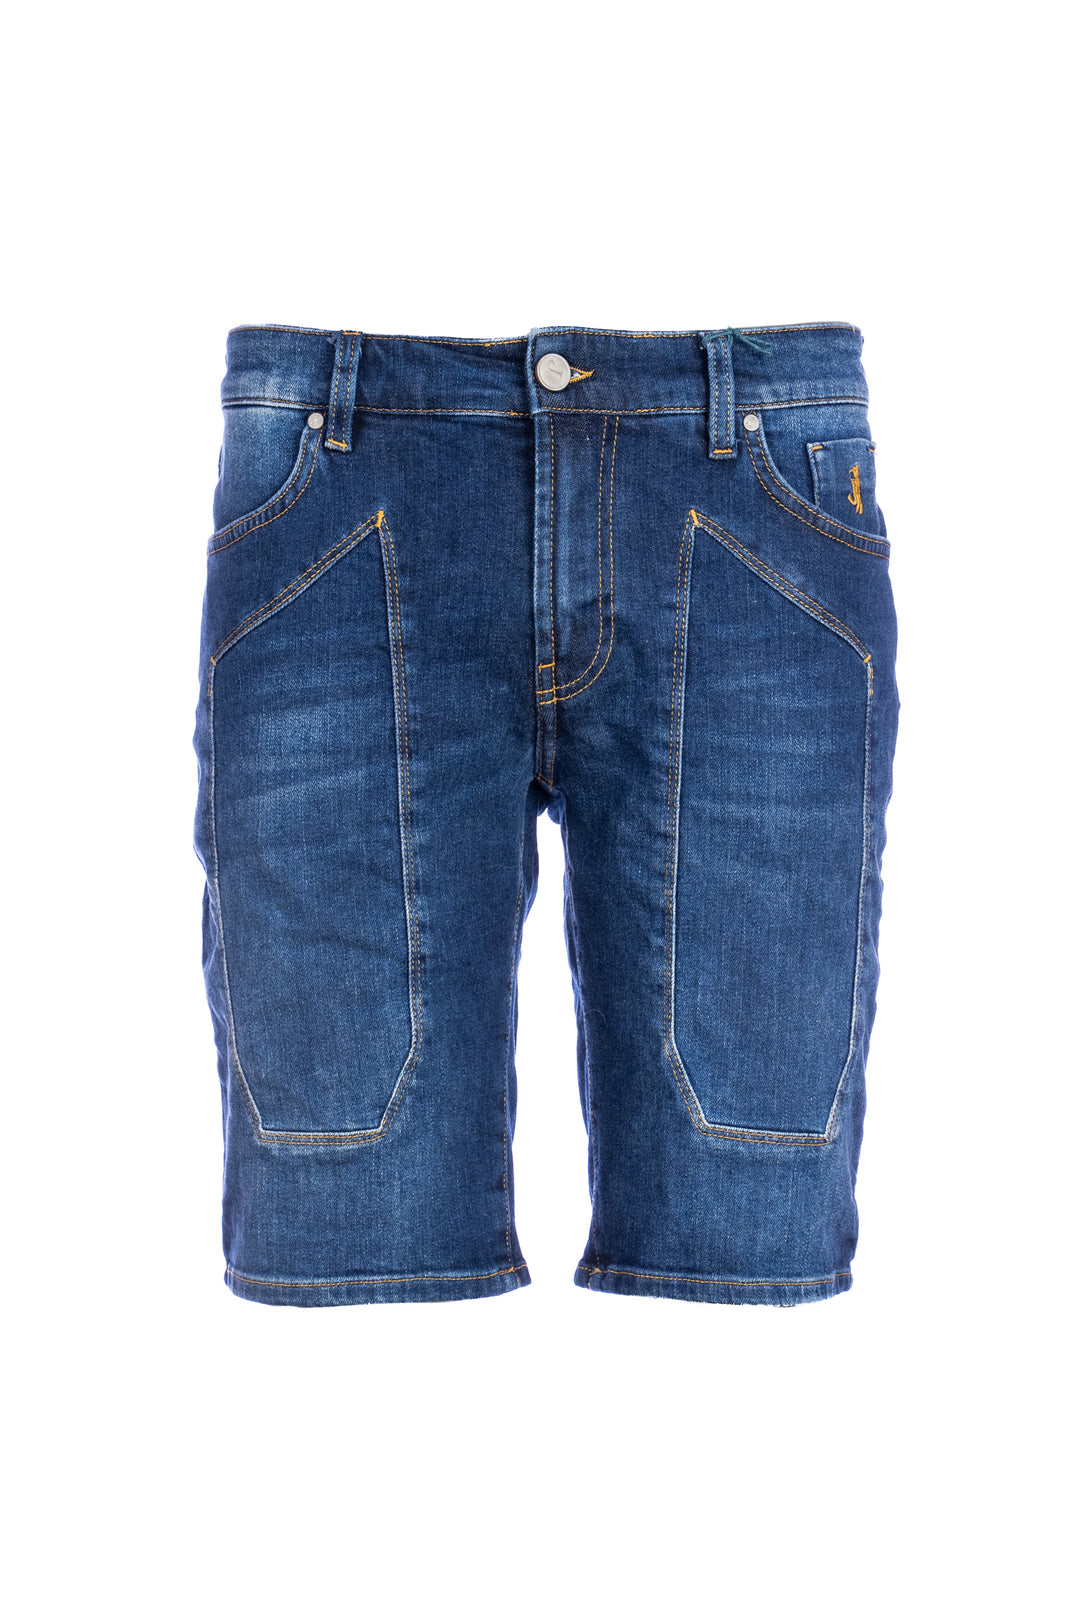 JECKERSON Jeans bermuda cinque tasche in denim stretch lavaggio scuro con toppe - Mancinelli 1954